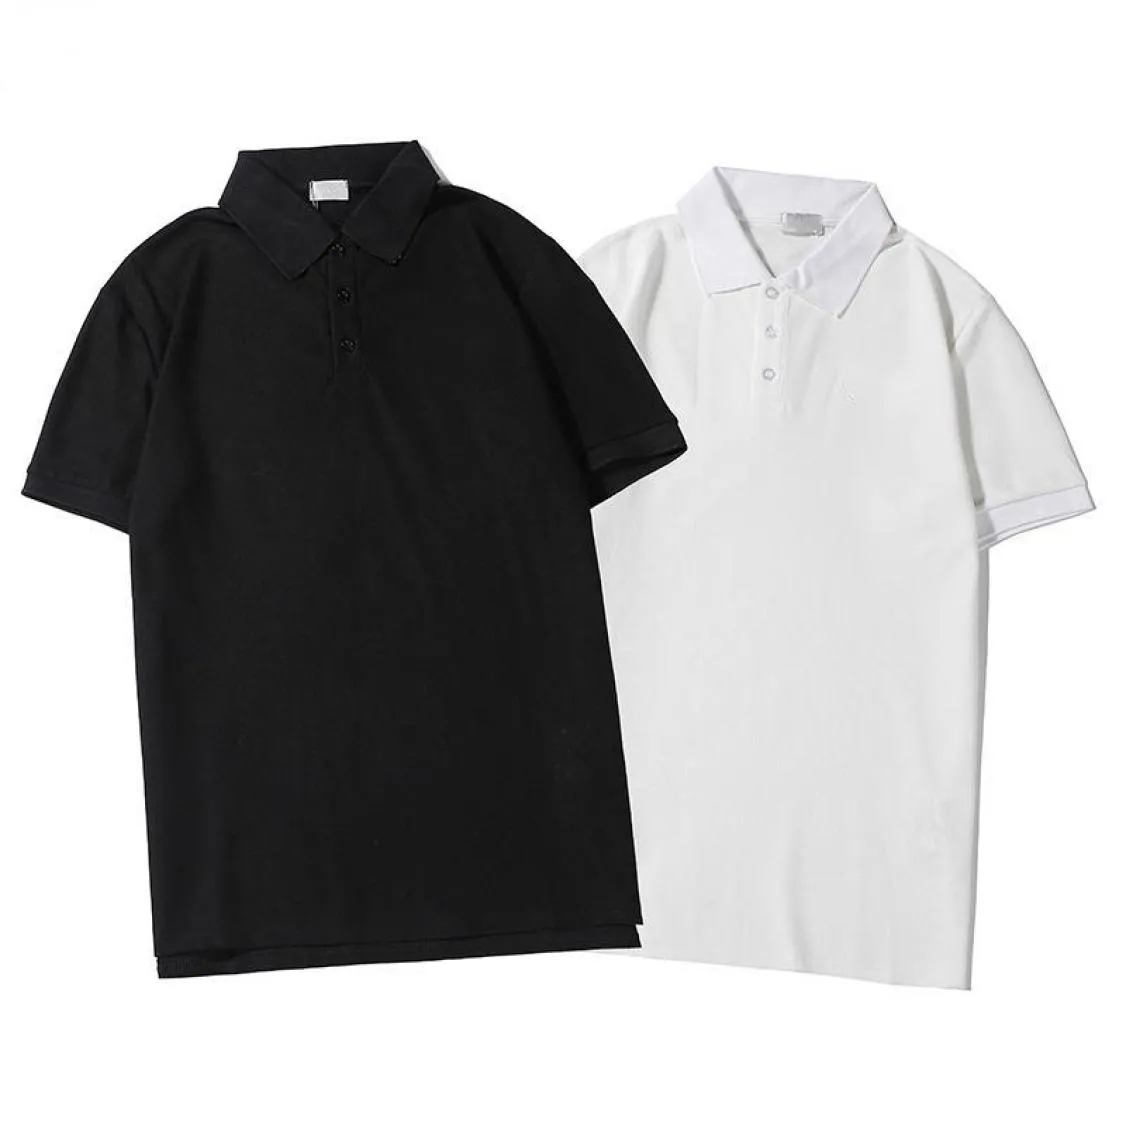 D2037 Golf Polo Shirt Sportwear Summer Men Kleidung Feste Farbe weiß schwarzer Standkragen T -Shirt T -Shirt Casual Lose Short Sleeve PU7864904